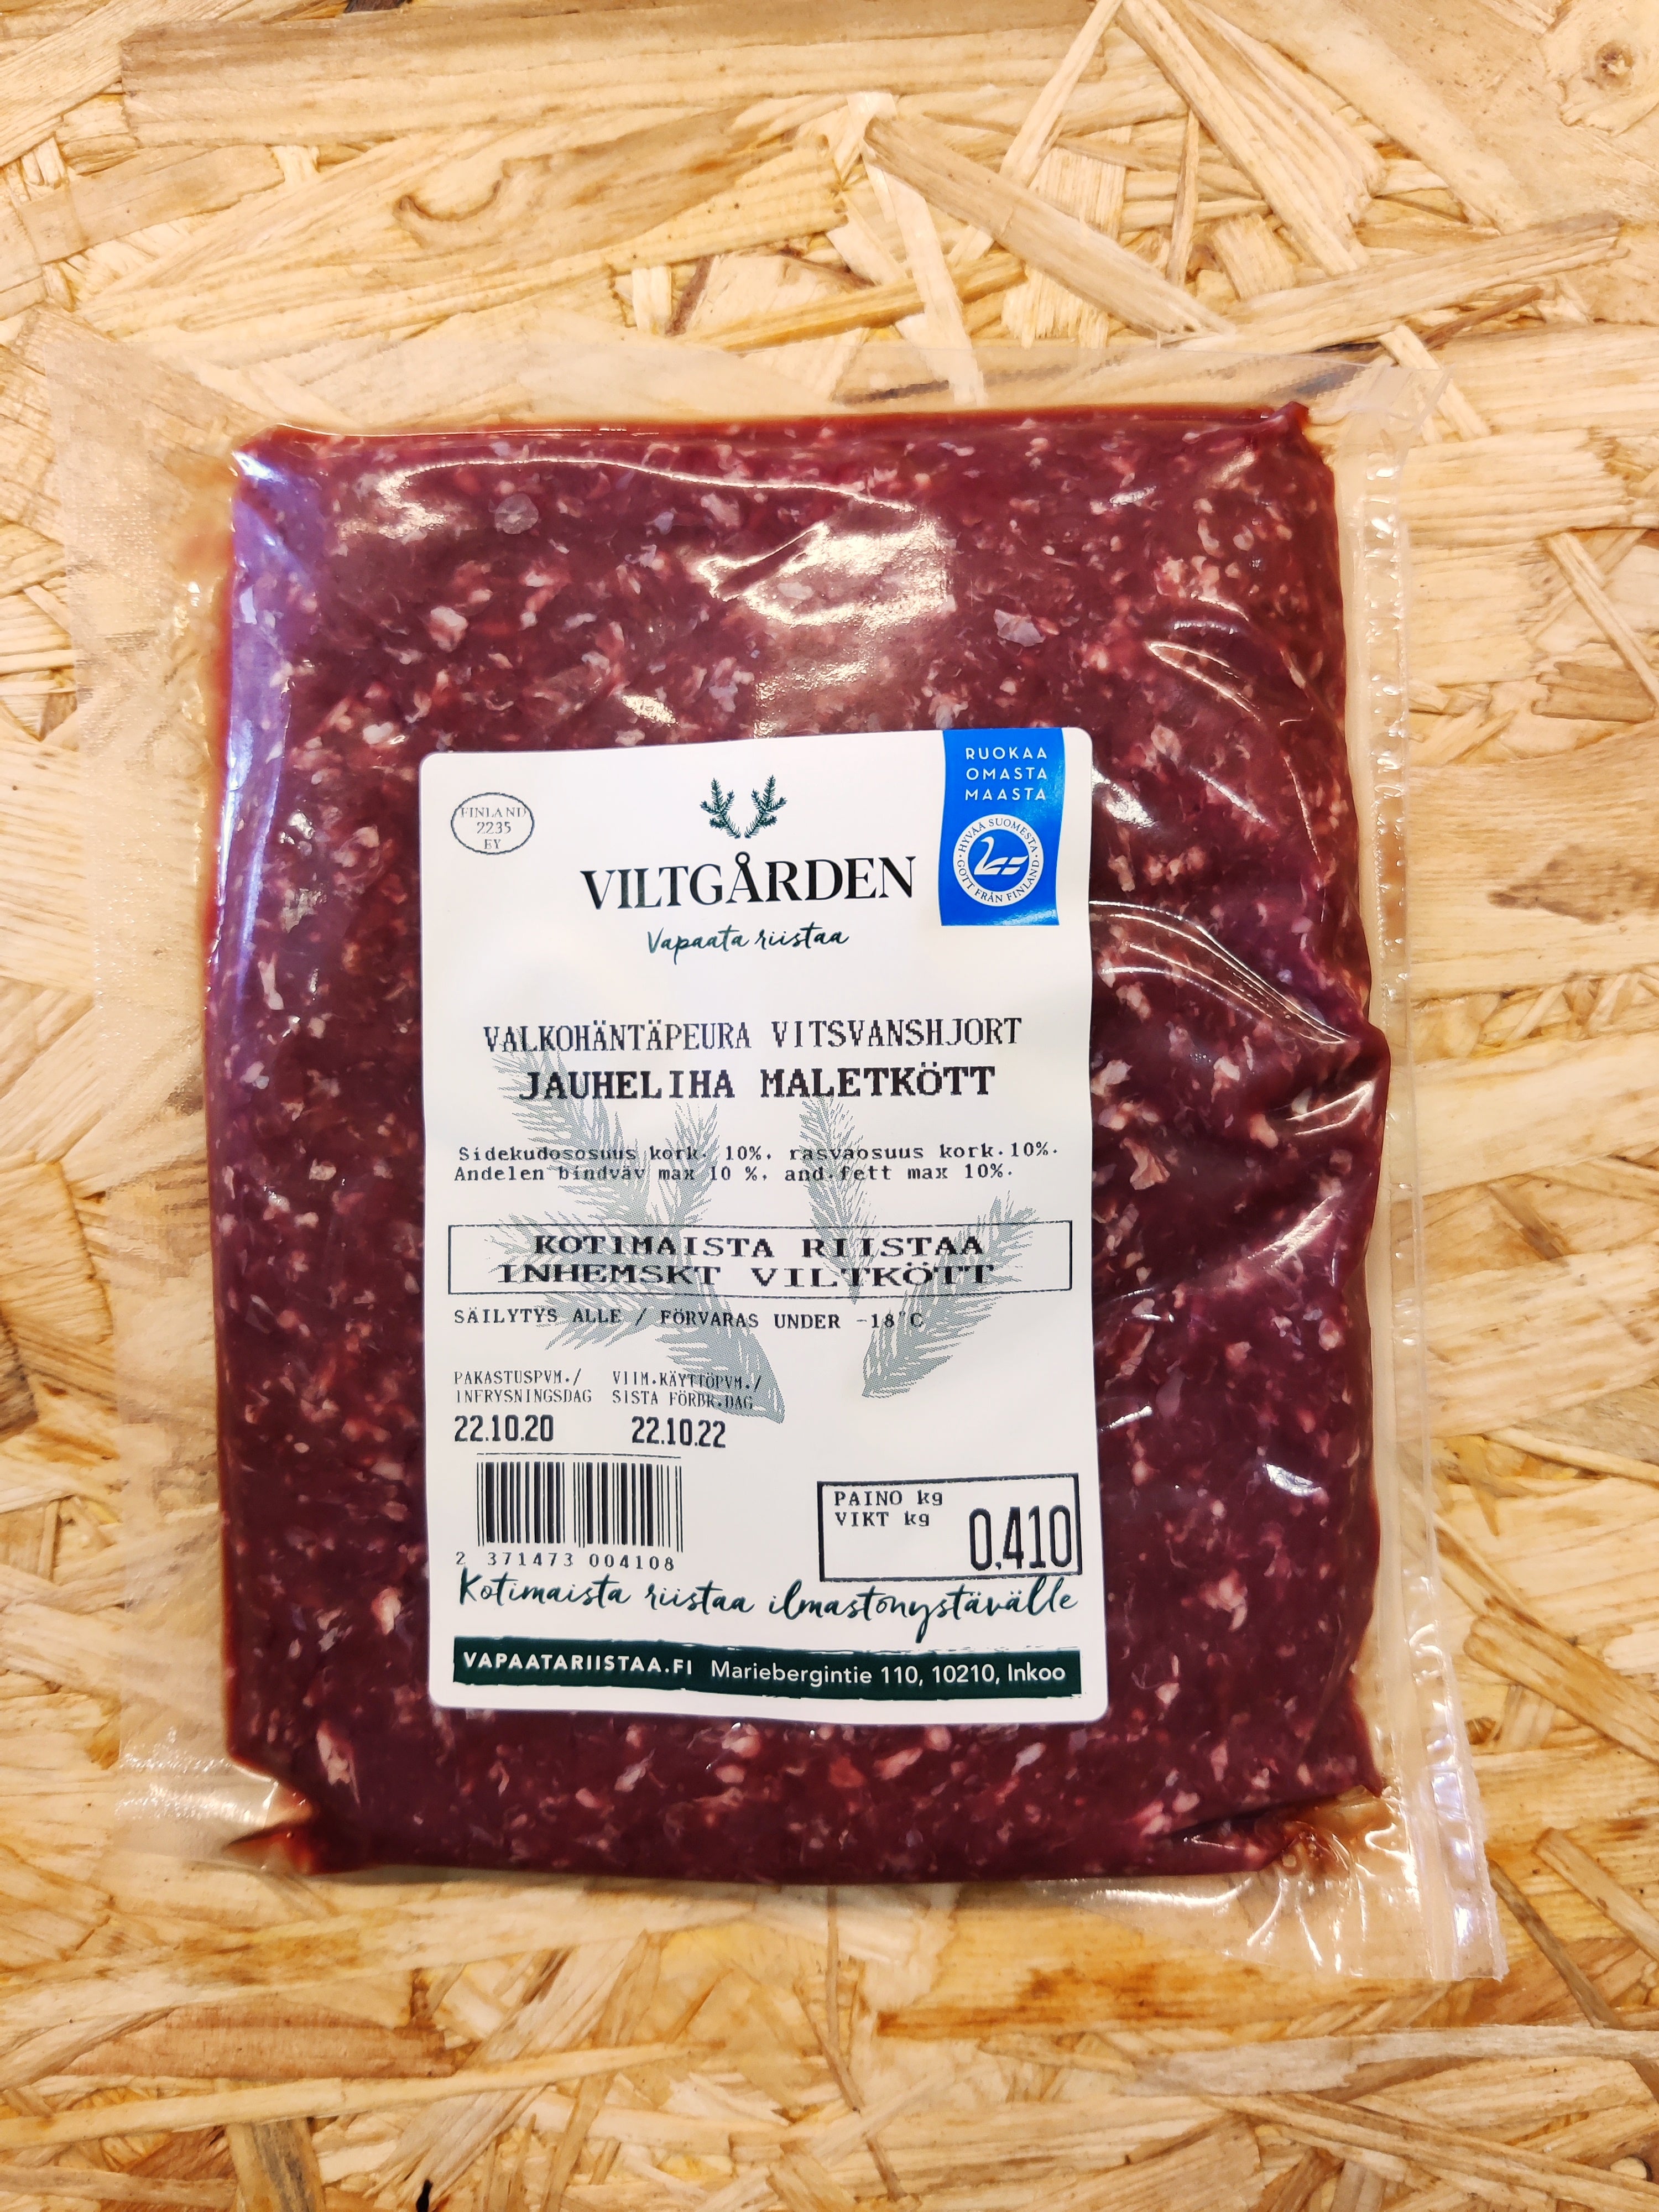 Peuran jauheliha 26,90€/kg – Viltgården -Vapaata riistaa